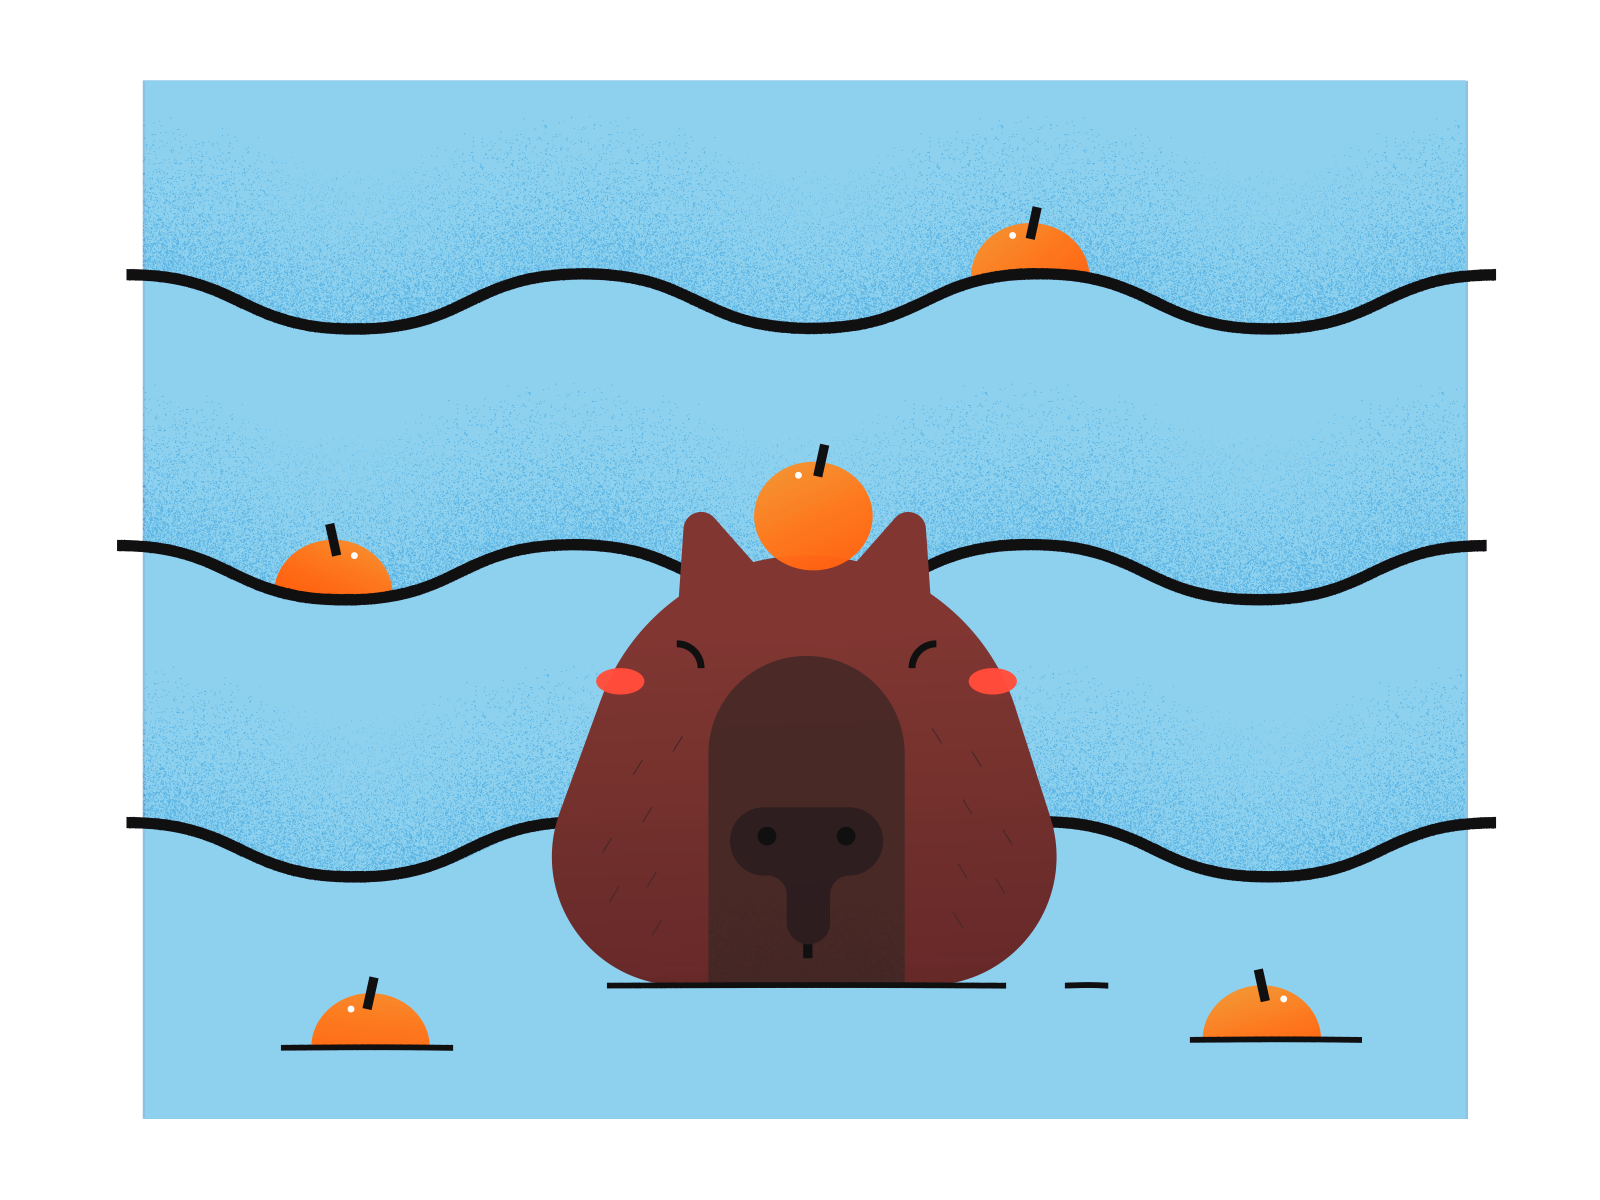 Capybara with mandarin orange on head by Keitsy Castillo on Dribbble